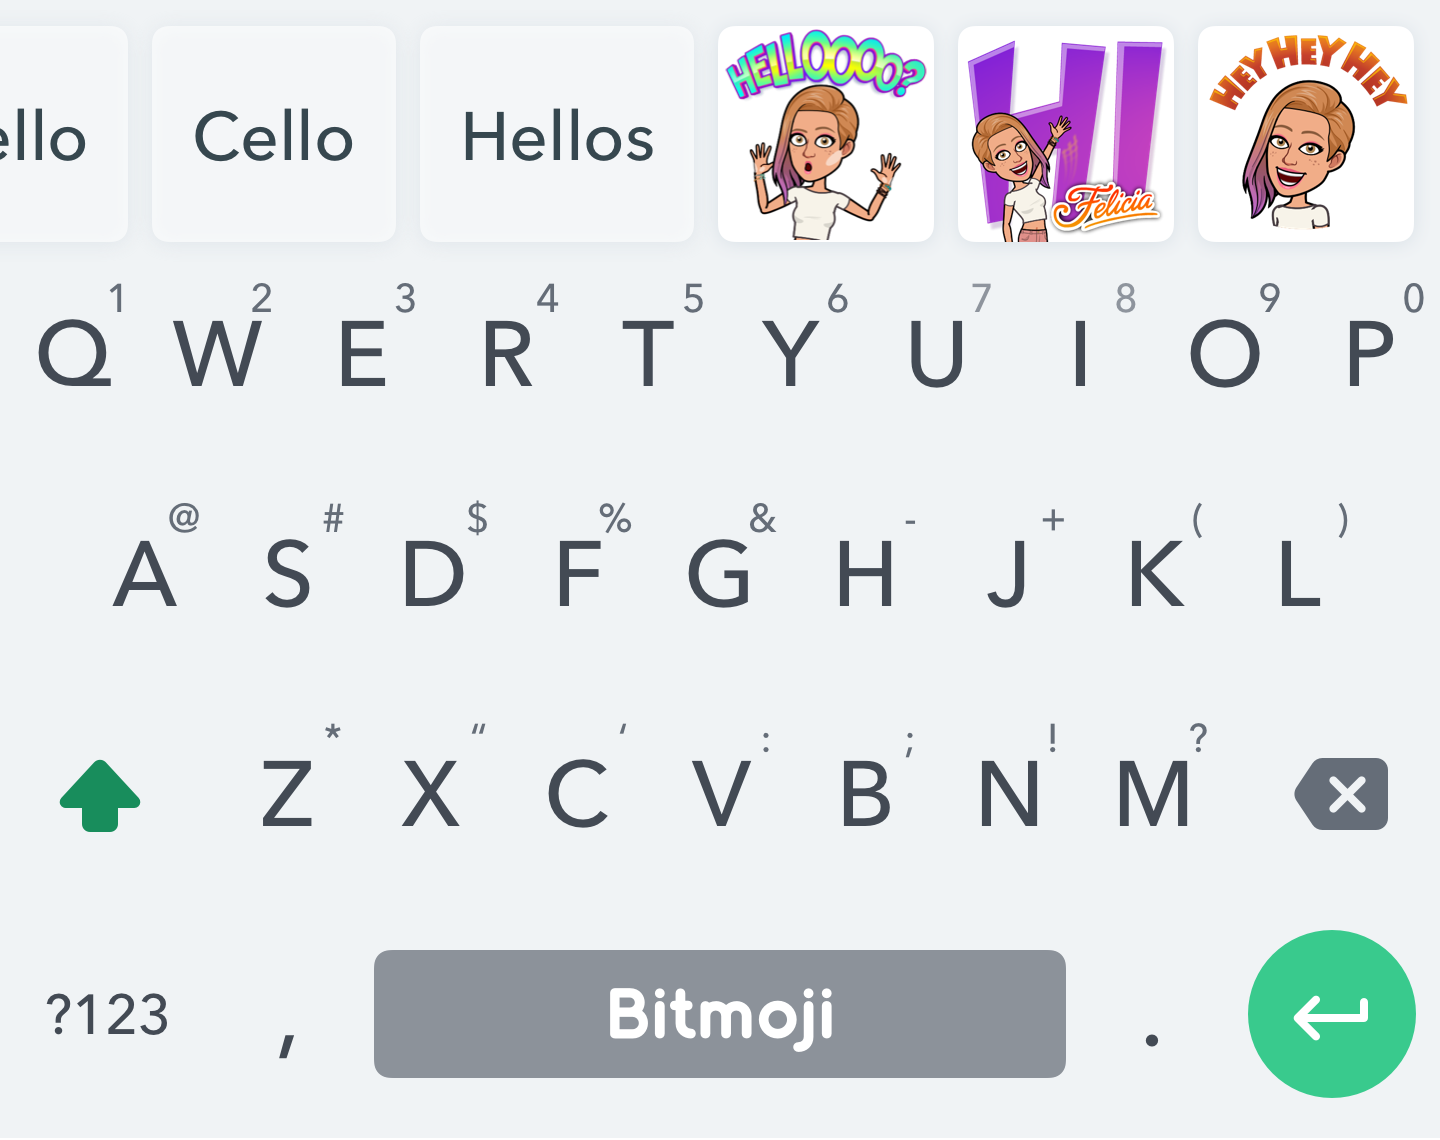 Teclado con palabras clave en la parte superior y sugerencias de stickers de Bitmoji basadas en lo que escribe el usuario